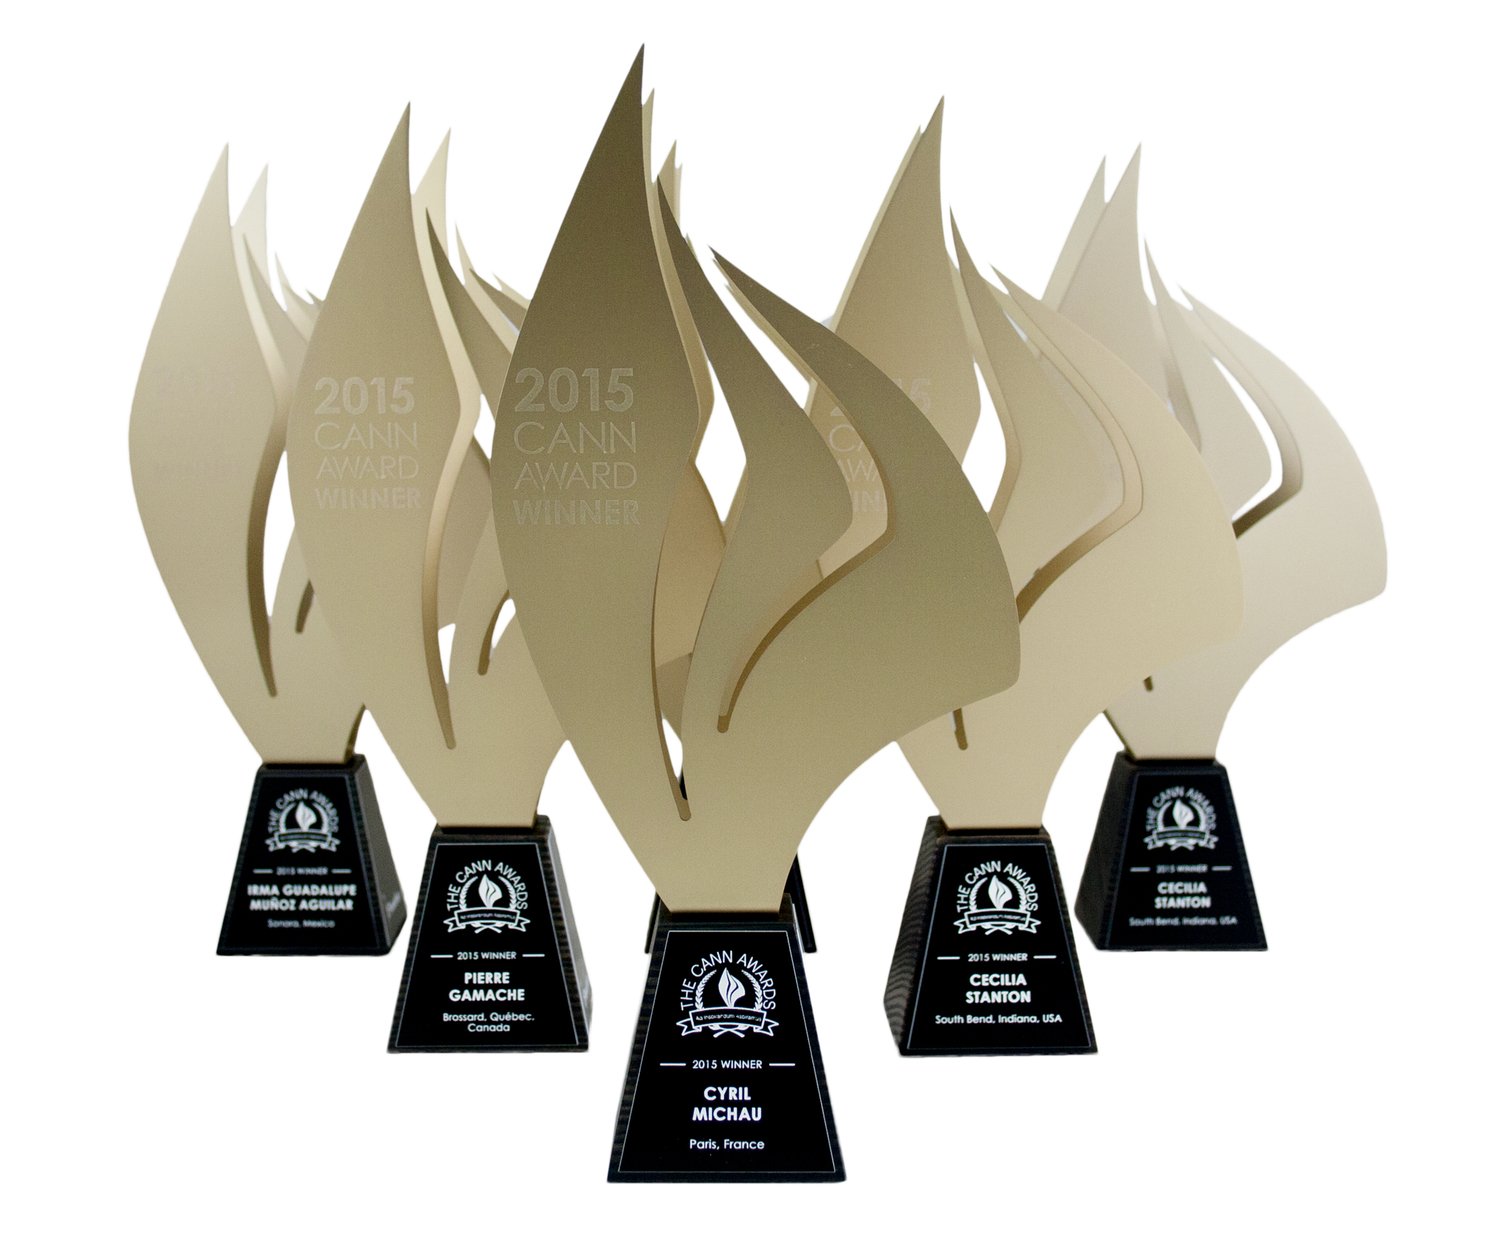 elegant metal trophy award with wooden base